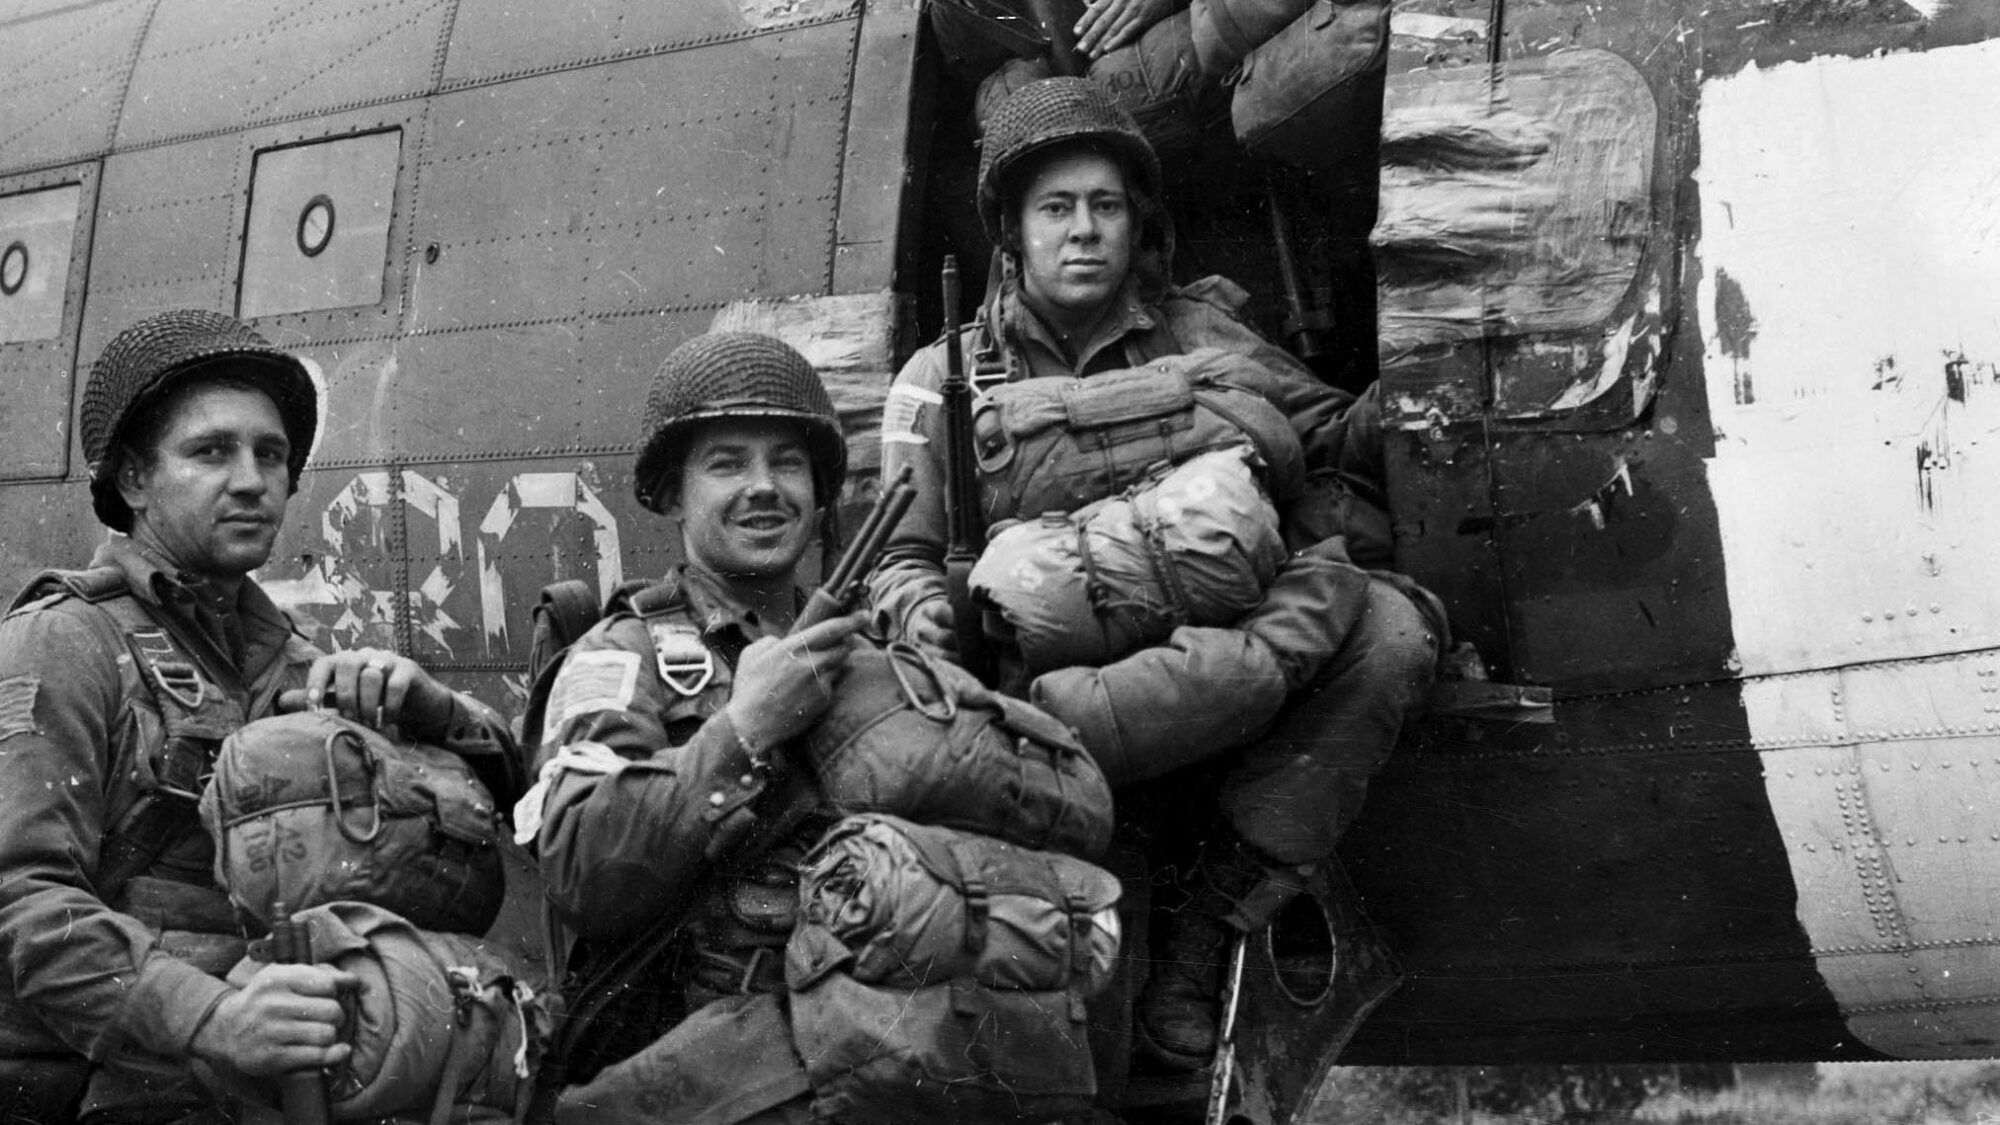  Become a Paratrooper - 1944 - World War II